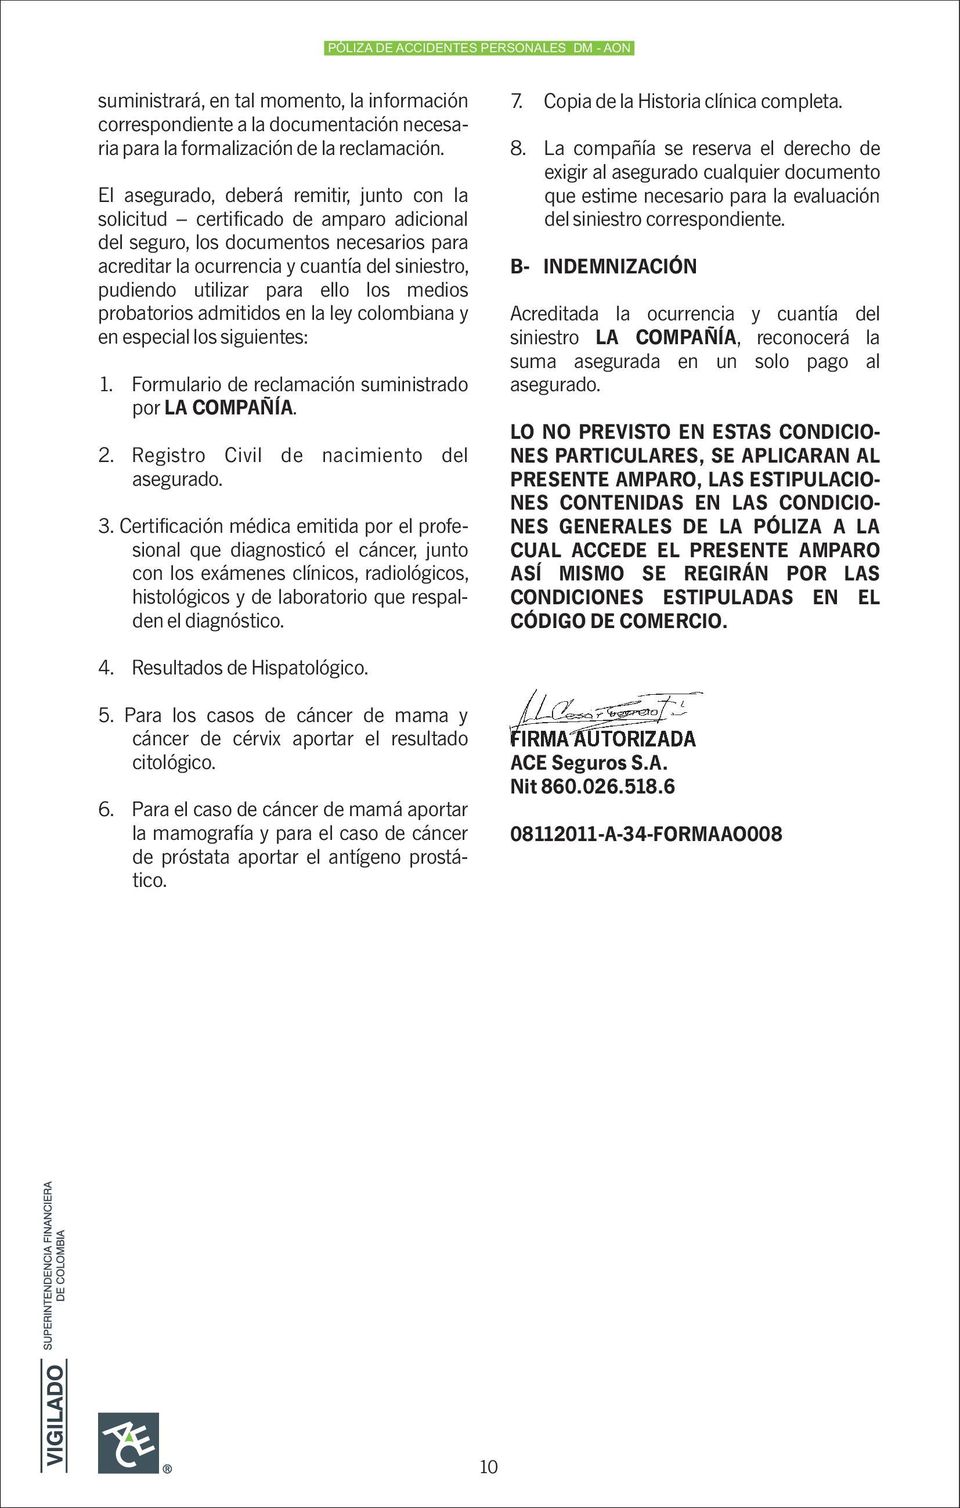 ello los medios probatorios admitidos en la ley colombiana y en especial los siguientes: 1. Formulario de reclamación suministrado por LA COMPAÑÍA. 2. Registro Civil de nacimiento del asegurado. 3.